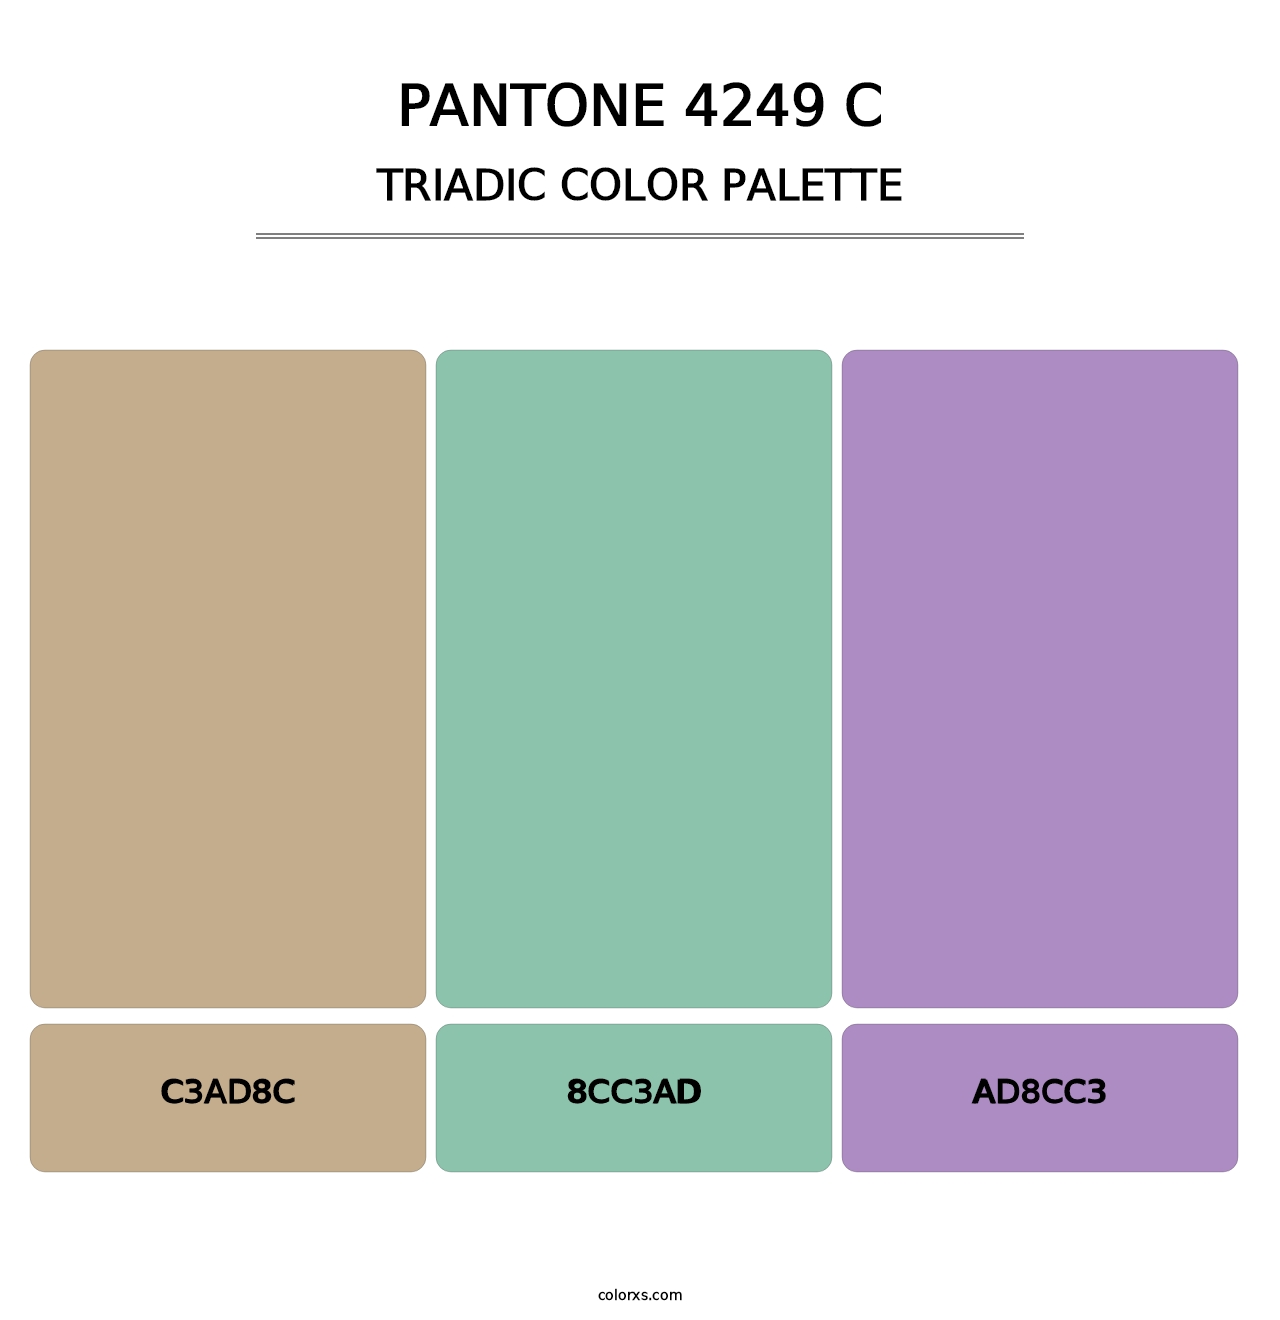 PANTONE 4249 C - Triadic Color Palette